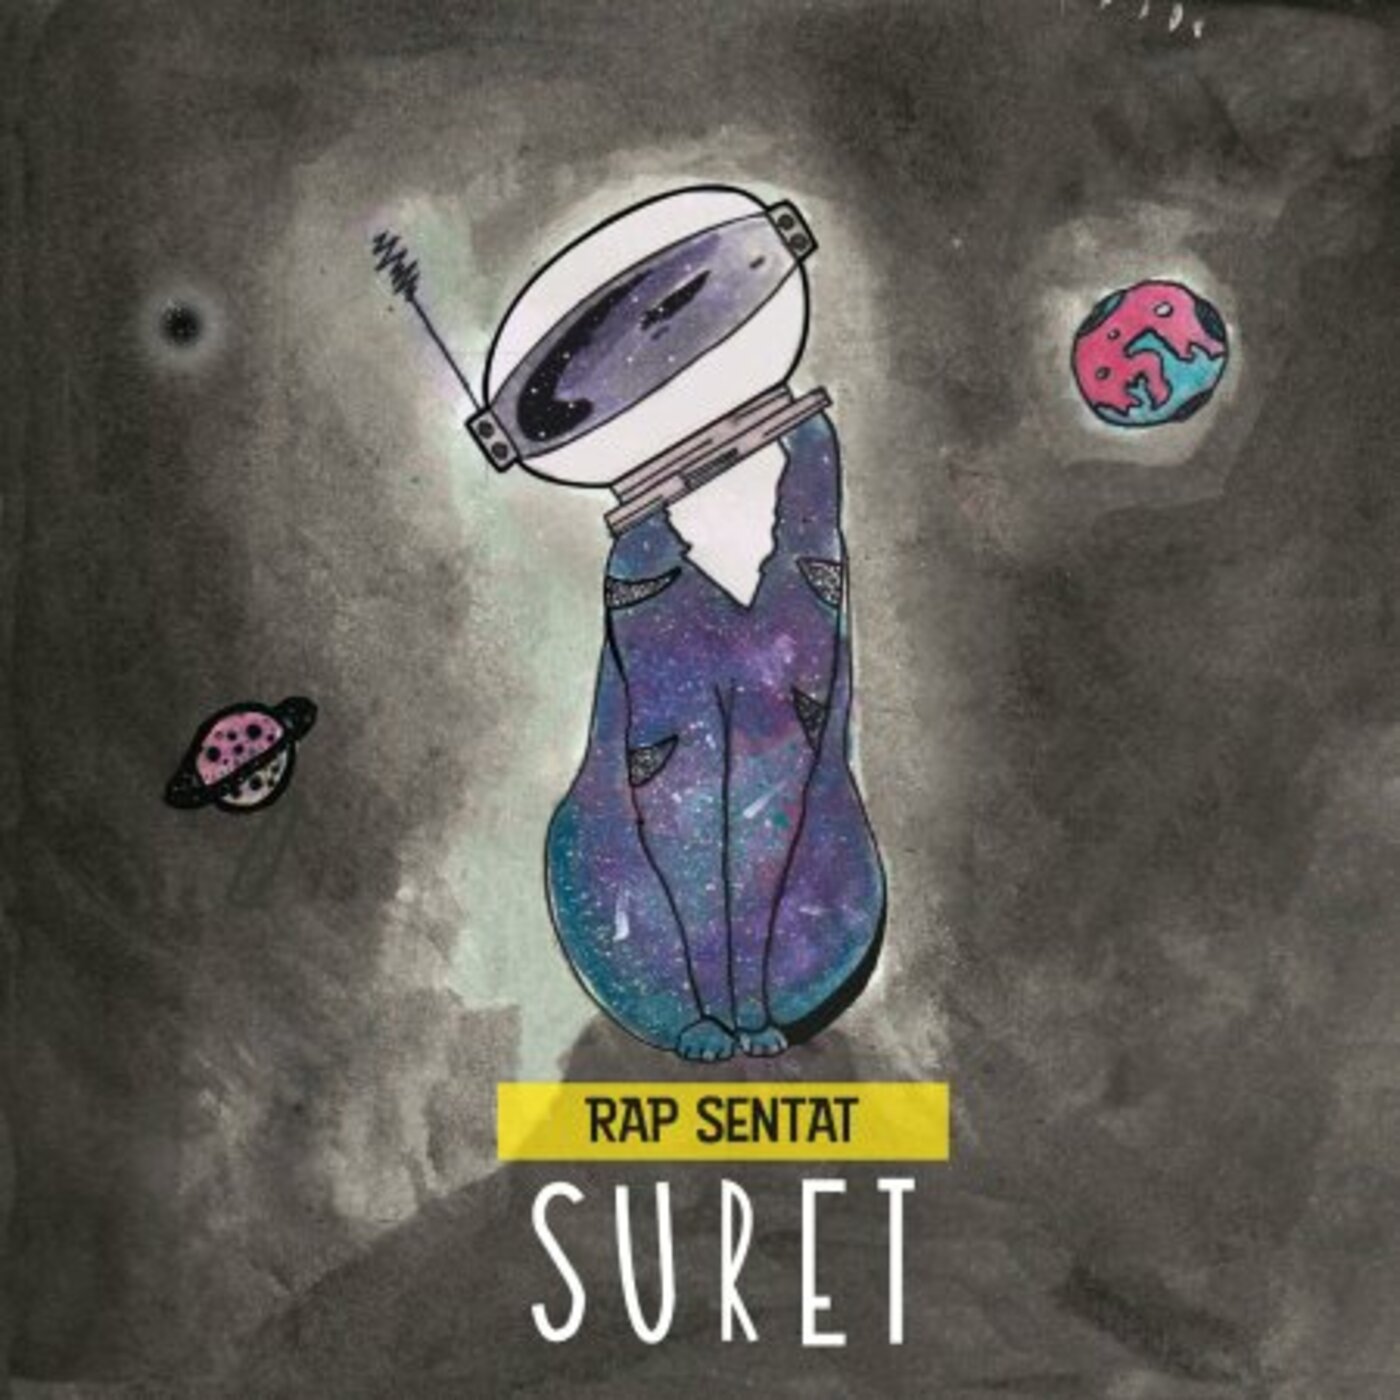 Suret - Rap sentat (Maqueta) | musica en valencià